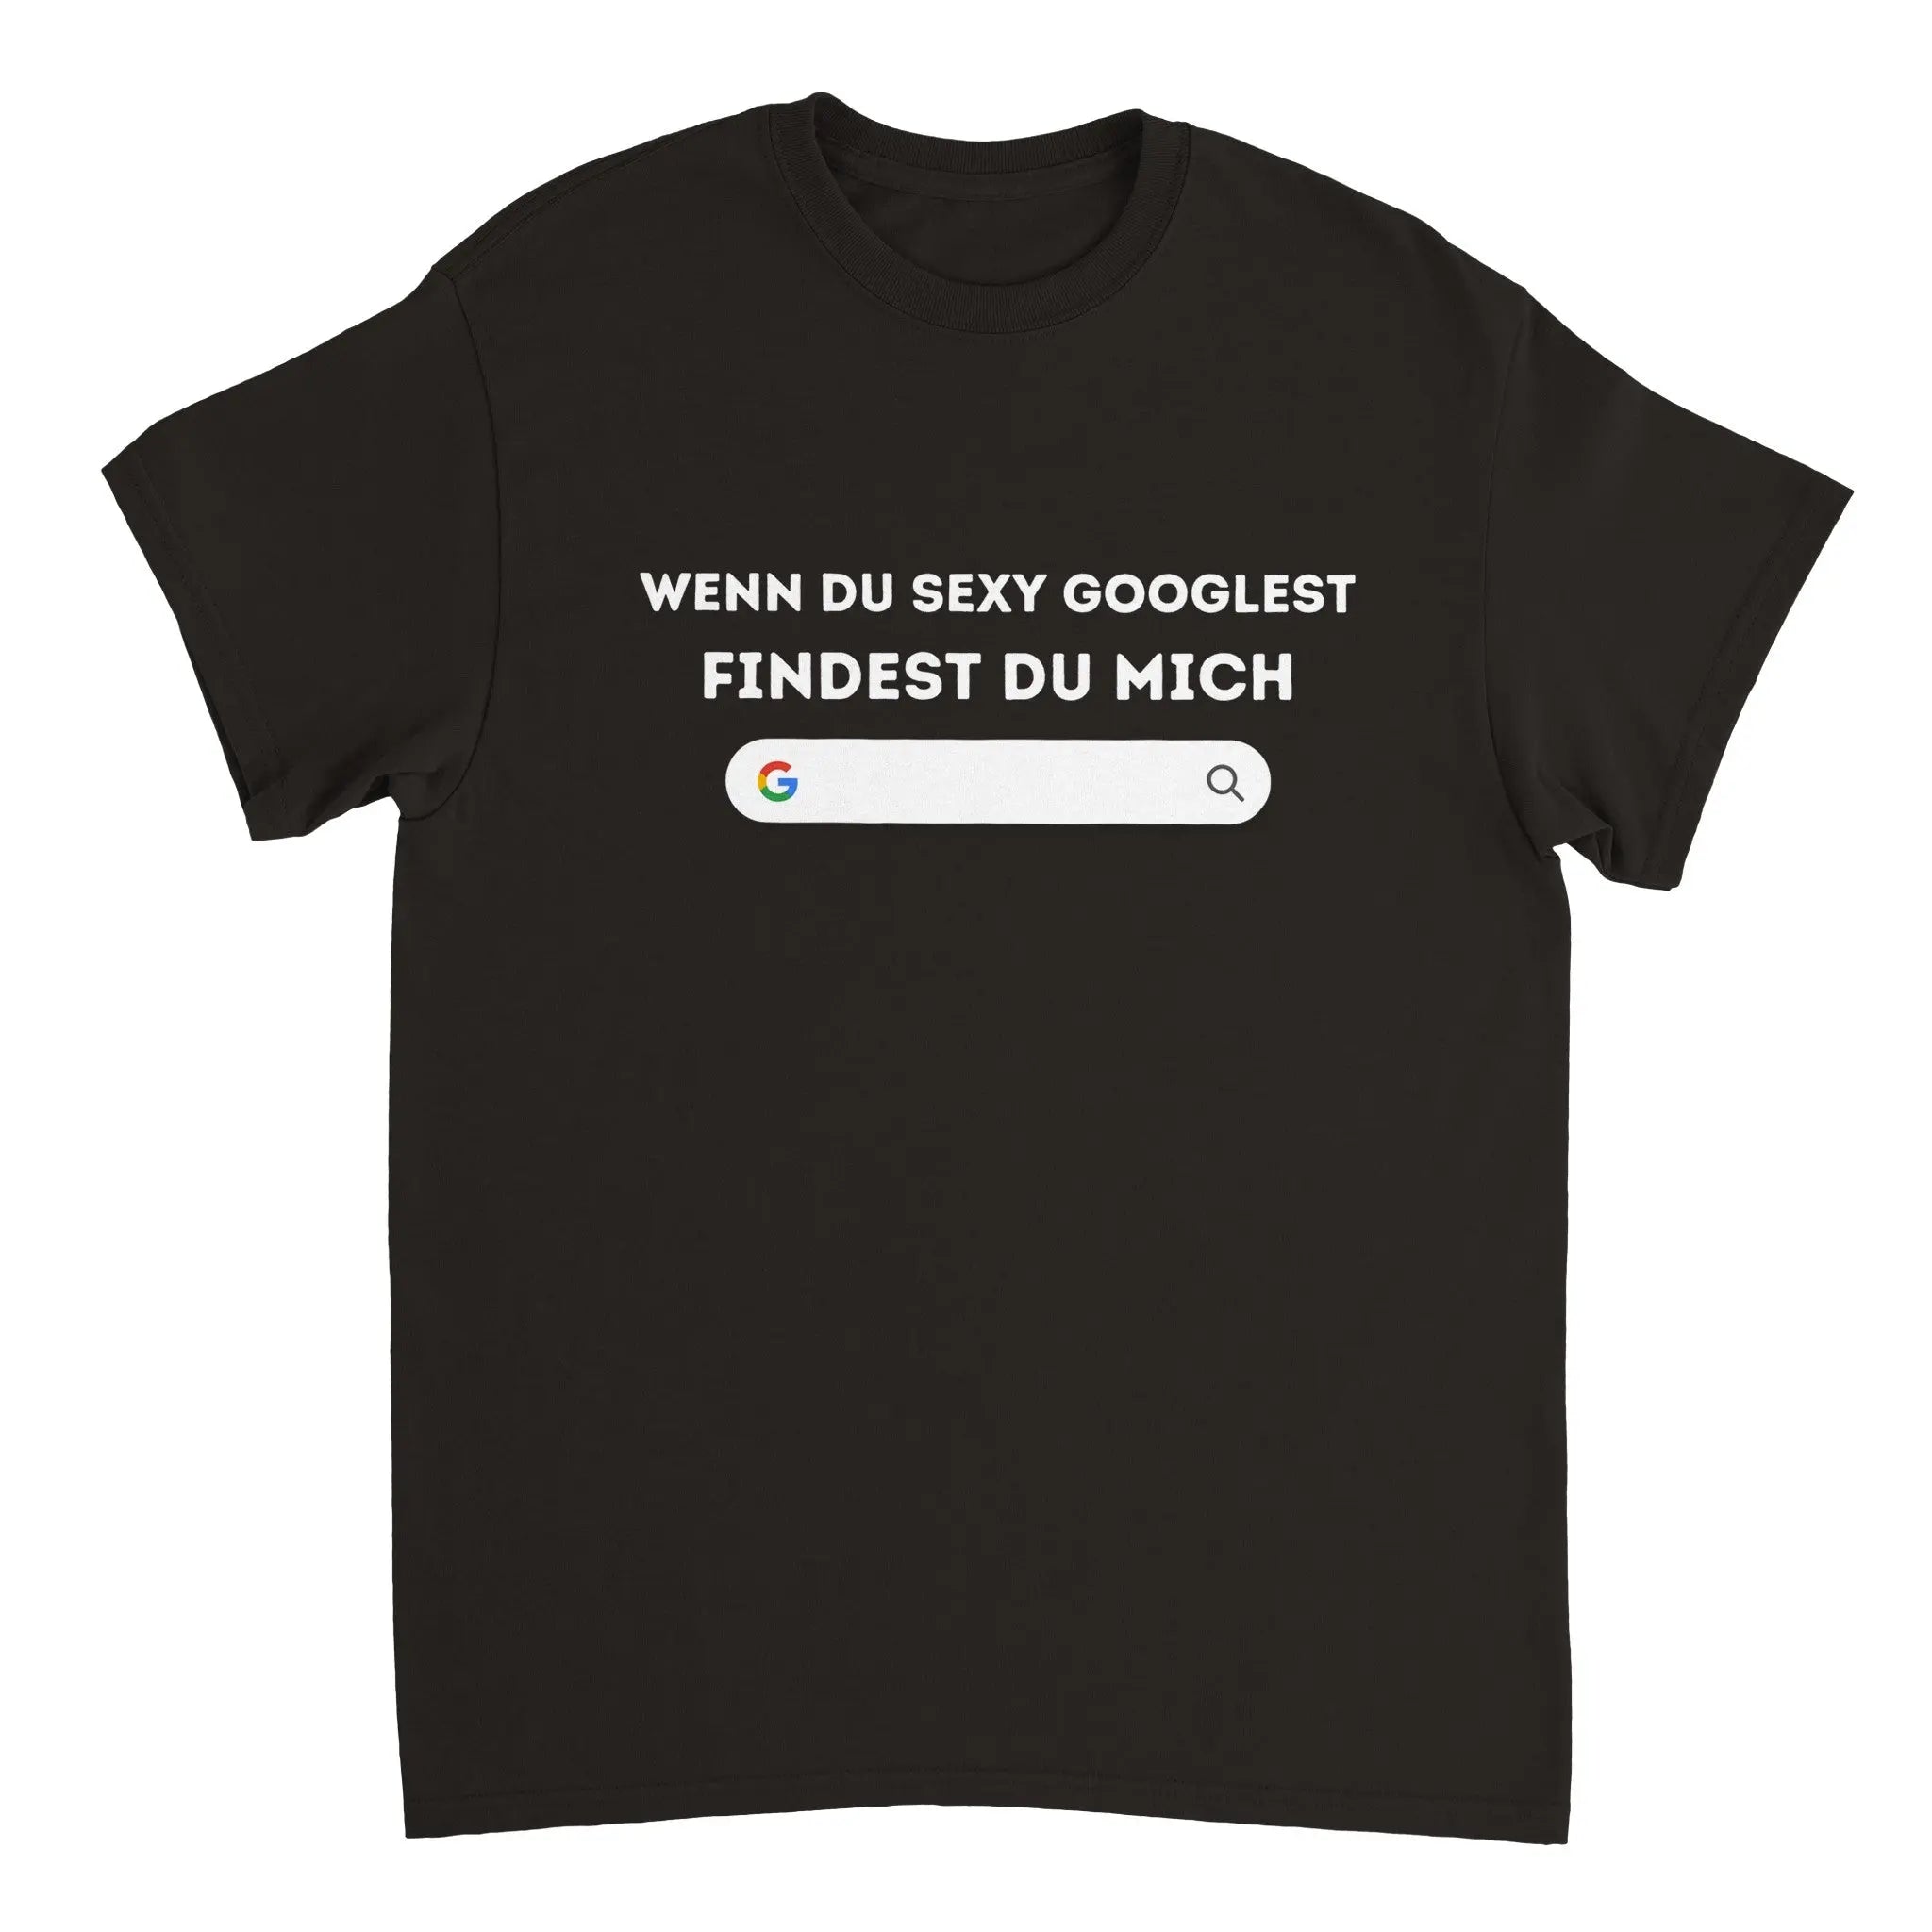 Ein Memeshirt mit dem Aufdruck 'Wenn du sexy googelst, findest du mich' - ein selbstbewusster Ausdruck von Individualität und Humor. Zeige deine einzigartige Persönlichkeit und bringe andere zum Schmunzeln mit diesem lustigen T-Shirt.